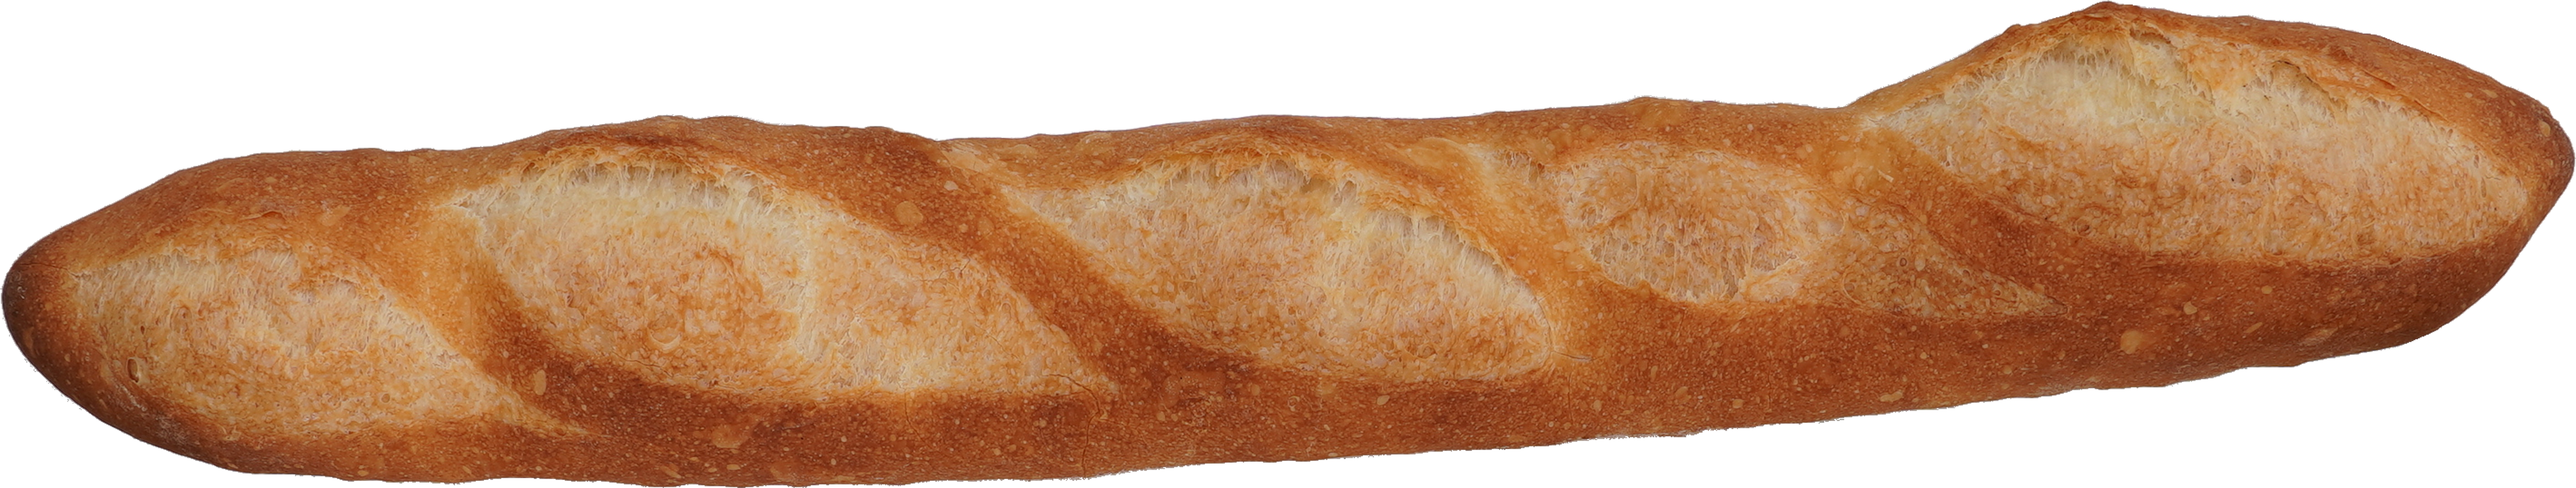 フランスパン 食品画像のそざい屋さん 商用可の食べ物フリー画像配布サイト